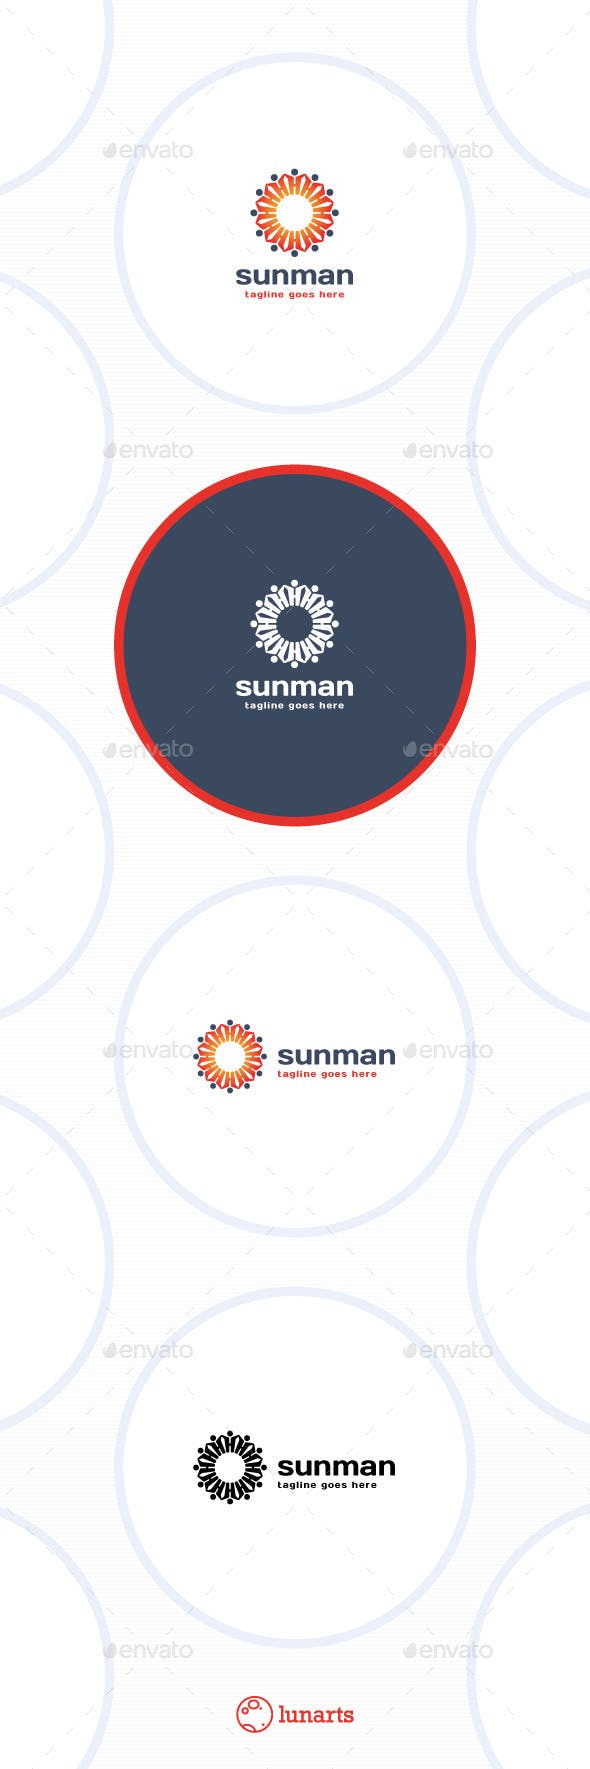 Sun and Man Logo - Sun Man Logo